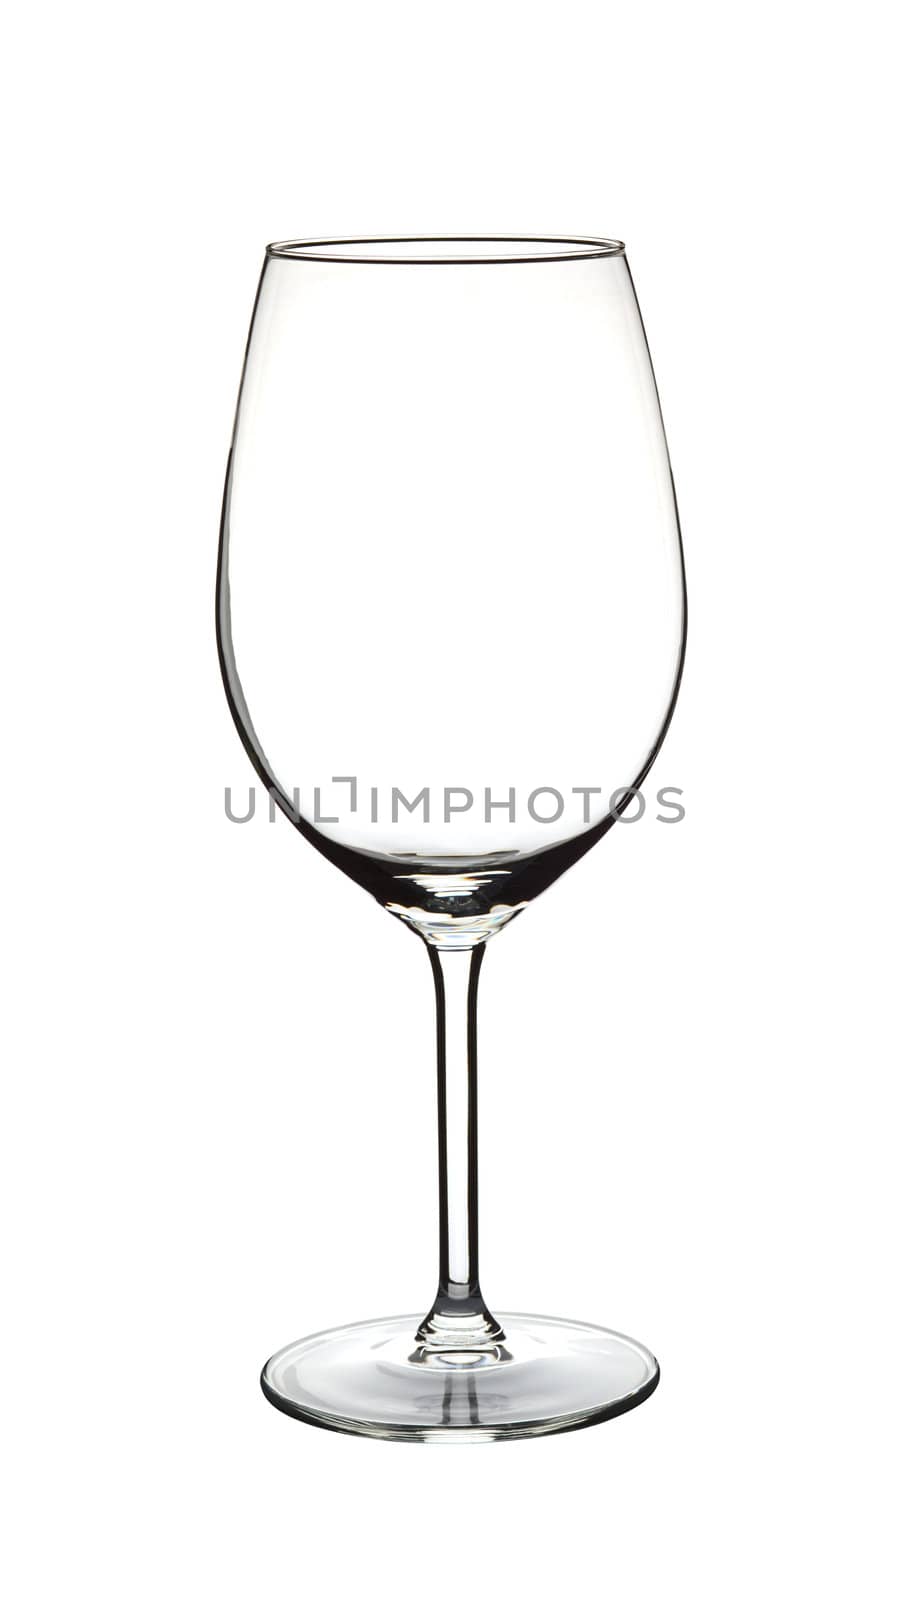 Empty Wine Glass by ildi